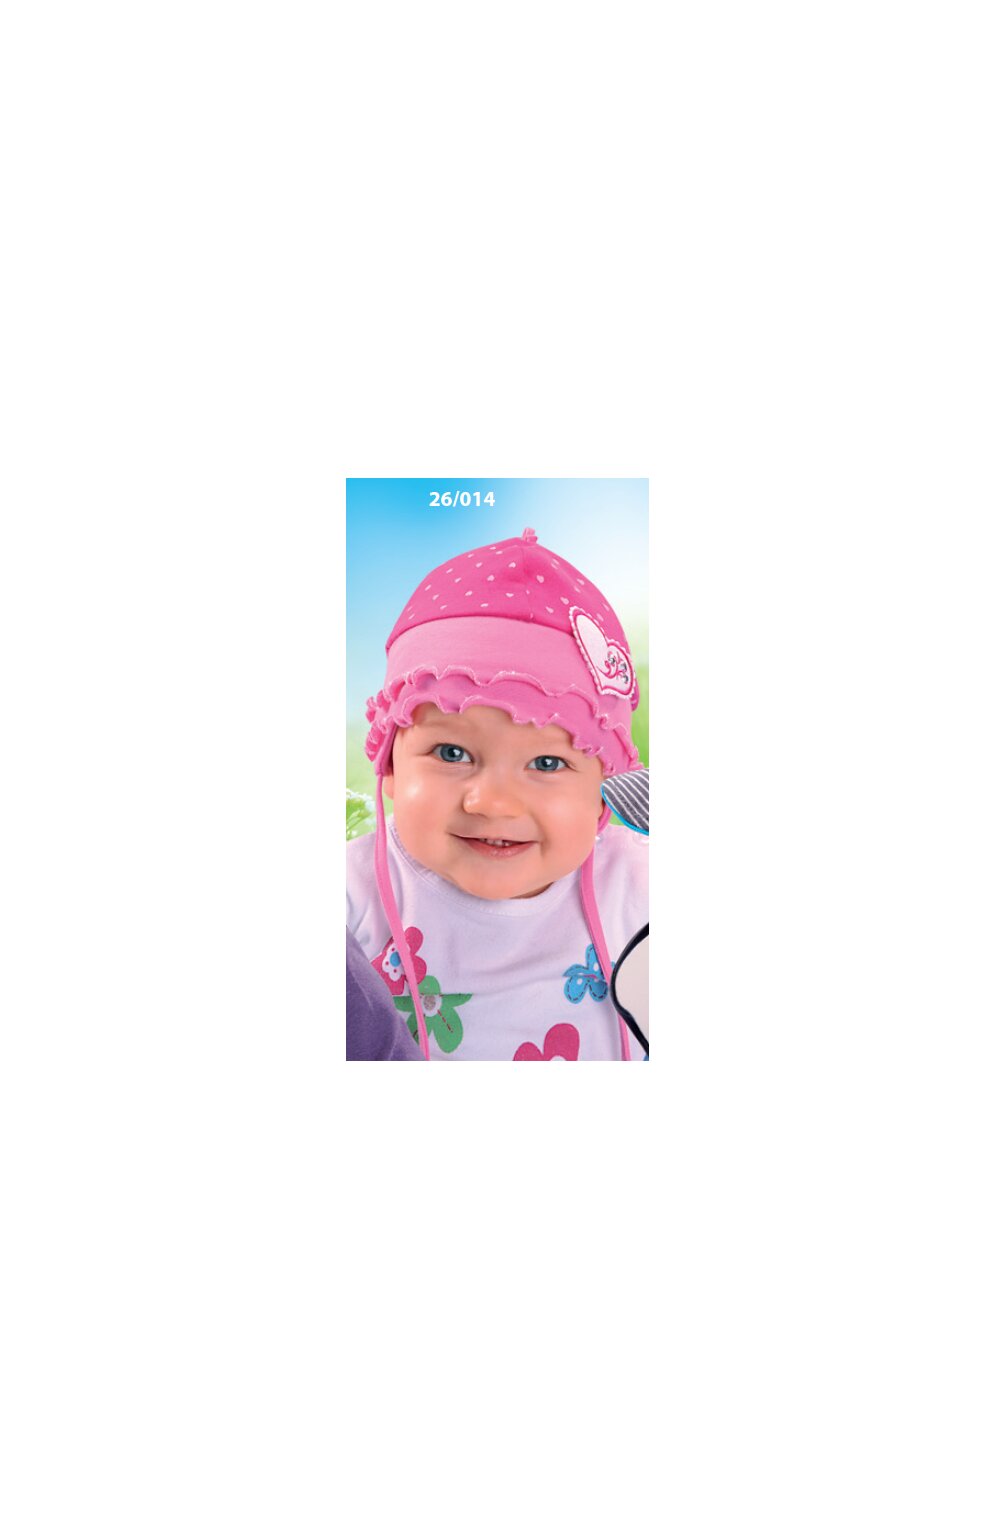 Caciula din bumbac pentru bebelusi 1-12 luni – AJS 26-014 roz 1-12 imagine noua 2022